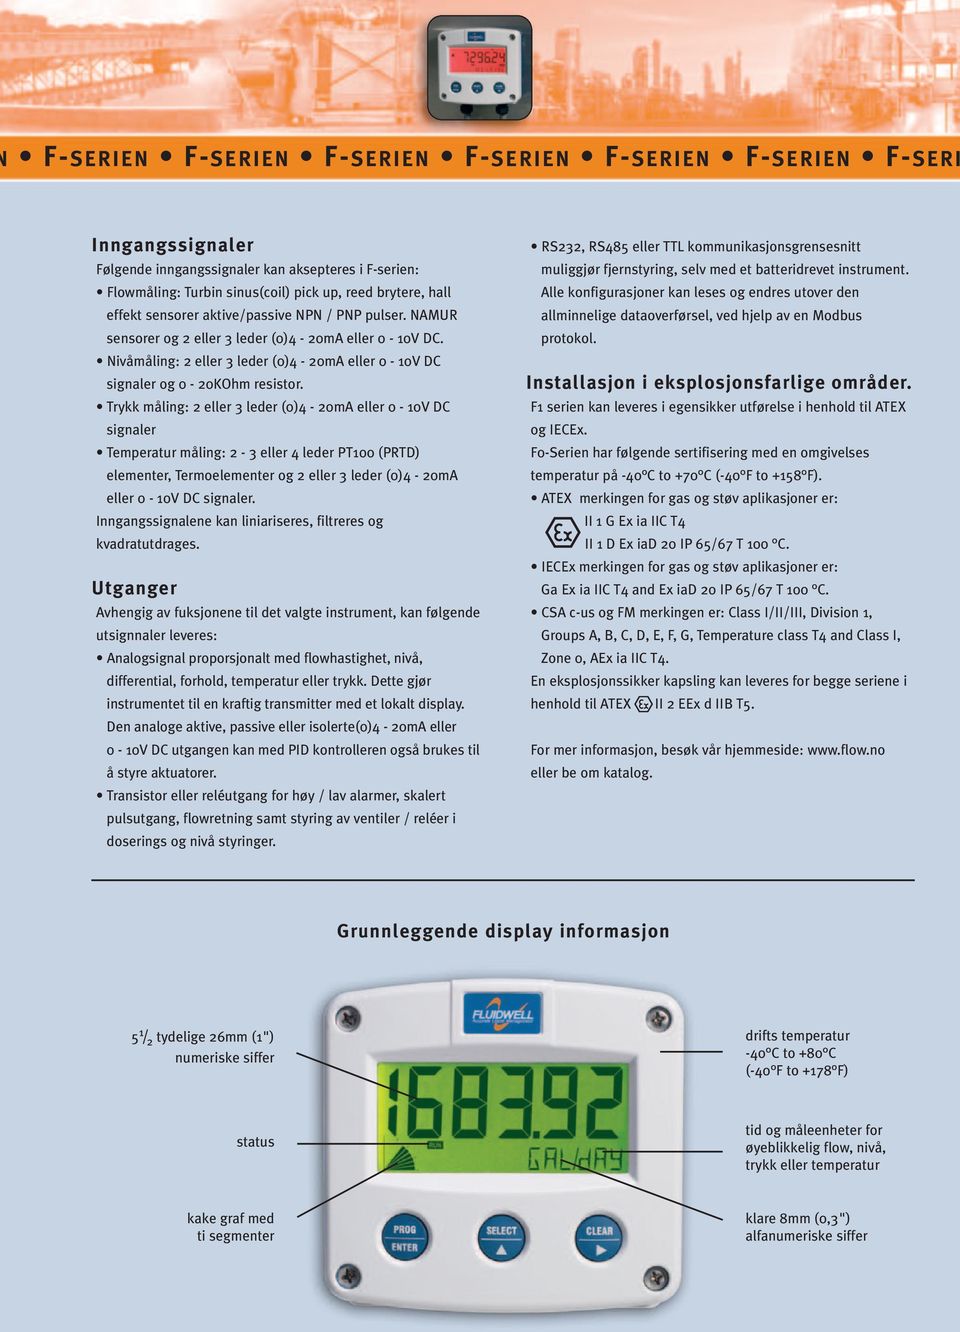 Trykk måling: 2 eller 3 leder (0)4-20mA eller 0-10V DC signaler Temperatur måling: 2-3 eller 4 leder PT100 (PRTD) elementer, Termoelementer og 2 eller 3 leder (0)4-20mA eller 0-10V DC signaler.